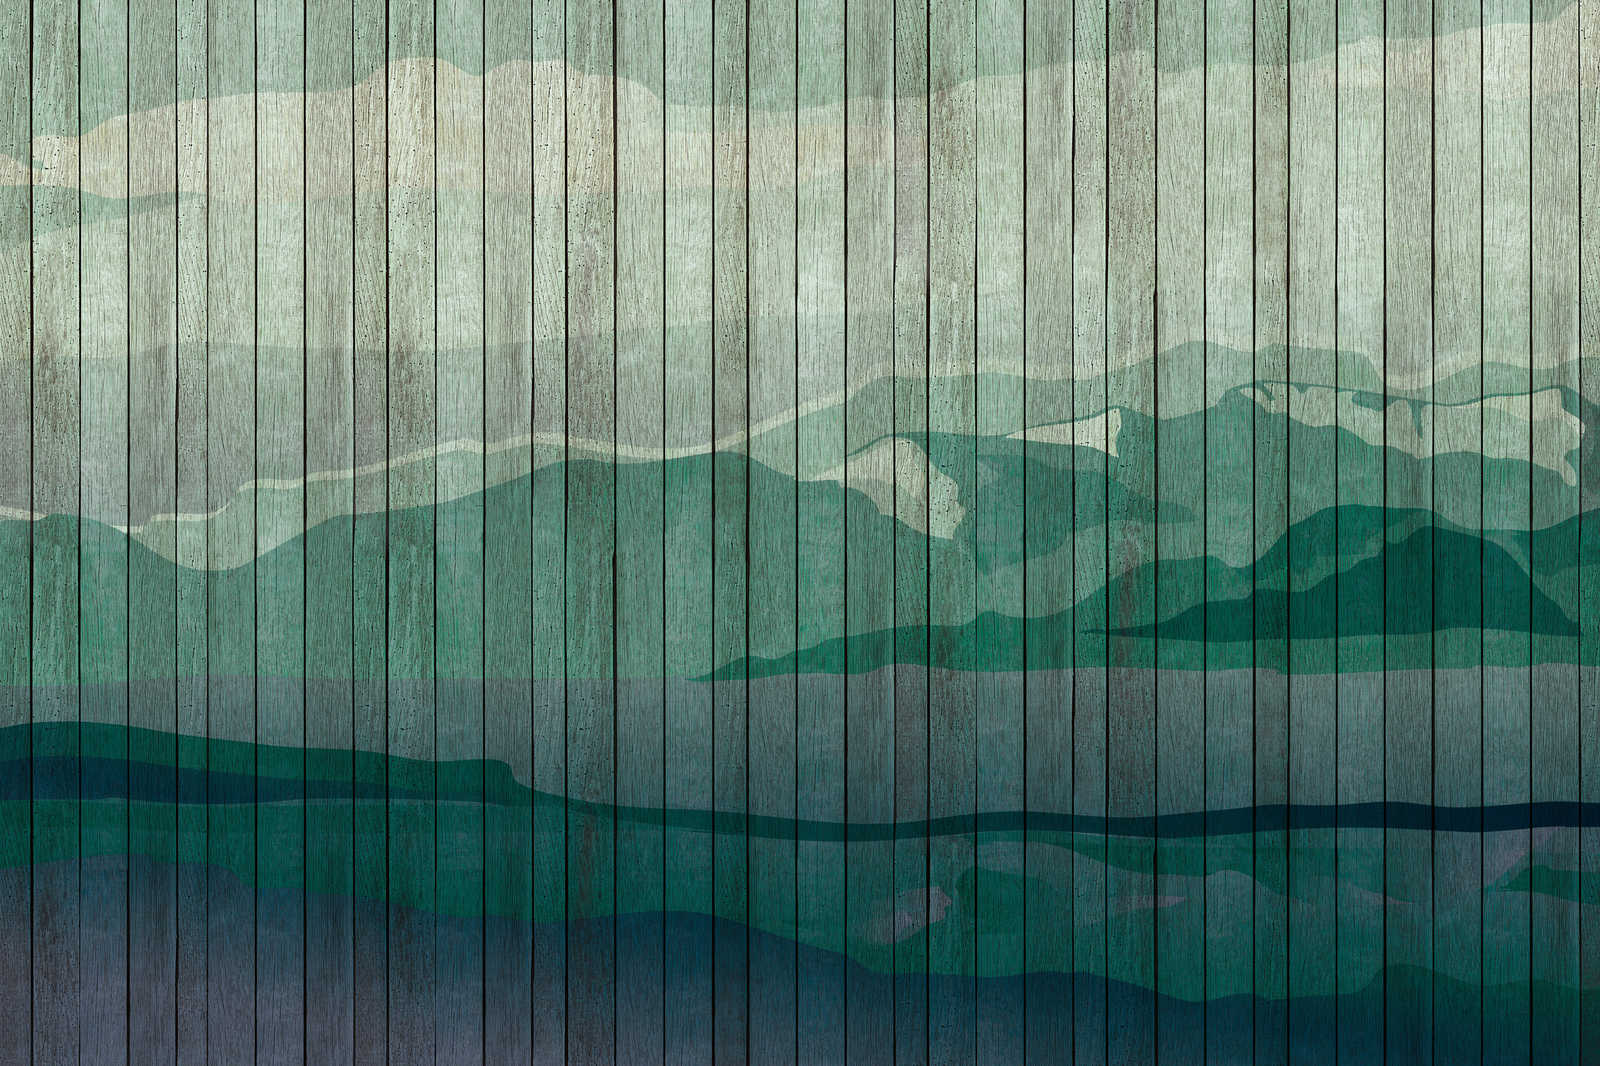             Mountains 3 - toile moderne paysage de montagne & aspect planche - 0,90 m x 0,60 m
        